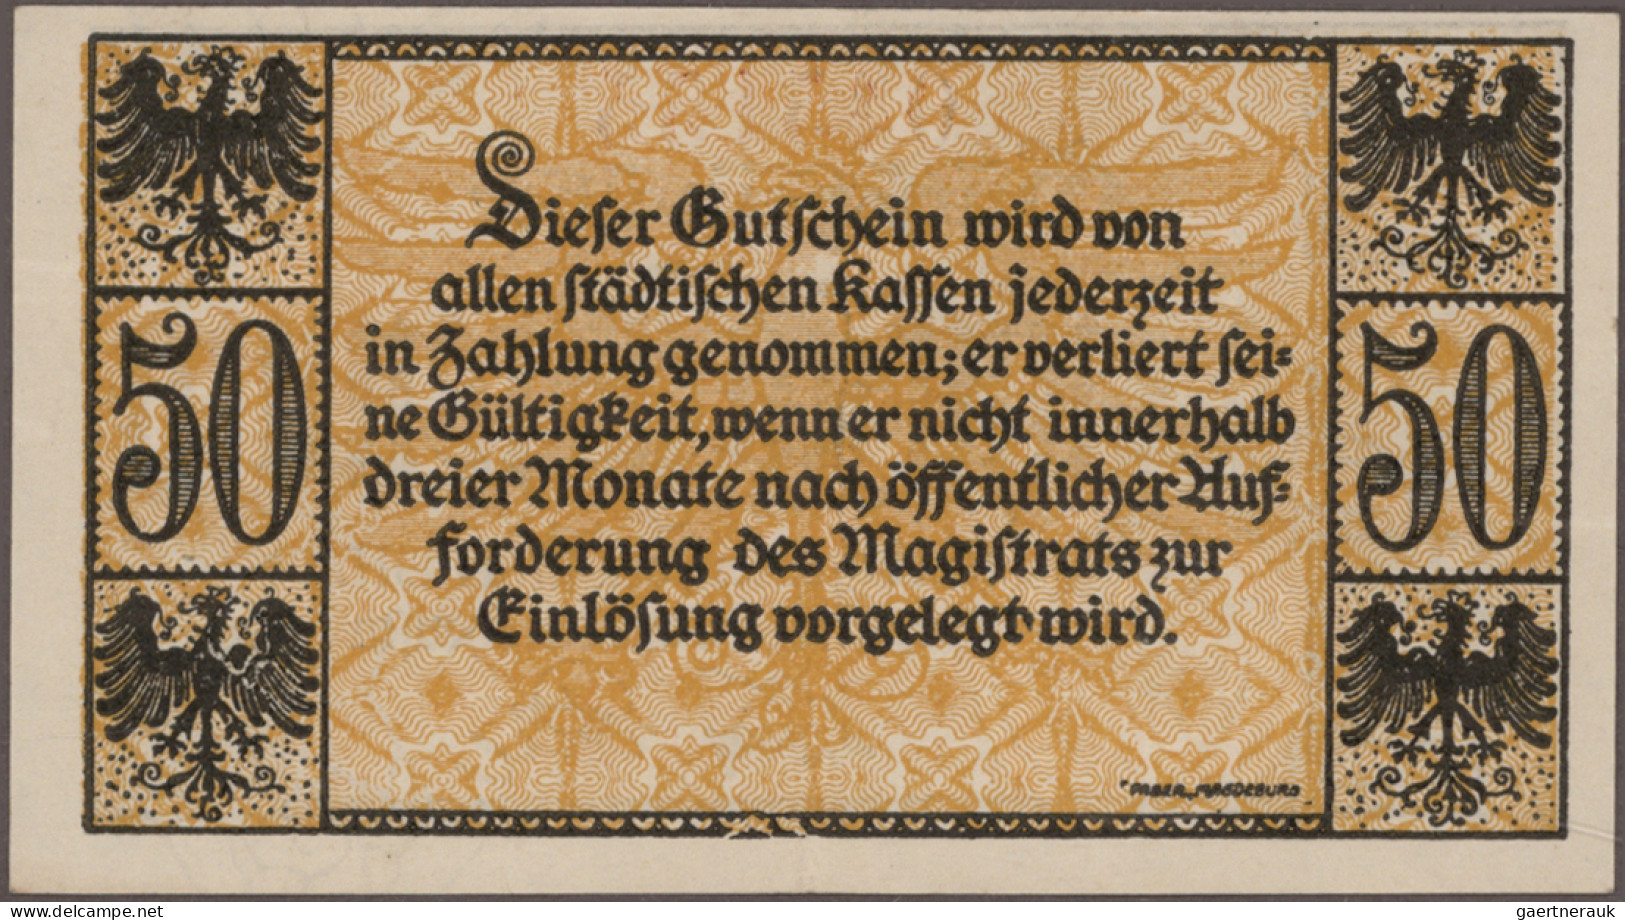 Deutschland - Notgeld: Kleingeldscheine ohne Serienscheine, Sammlung aus den 60e